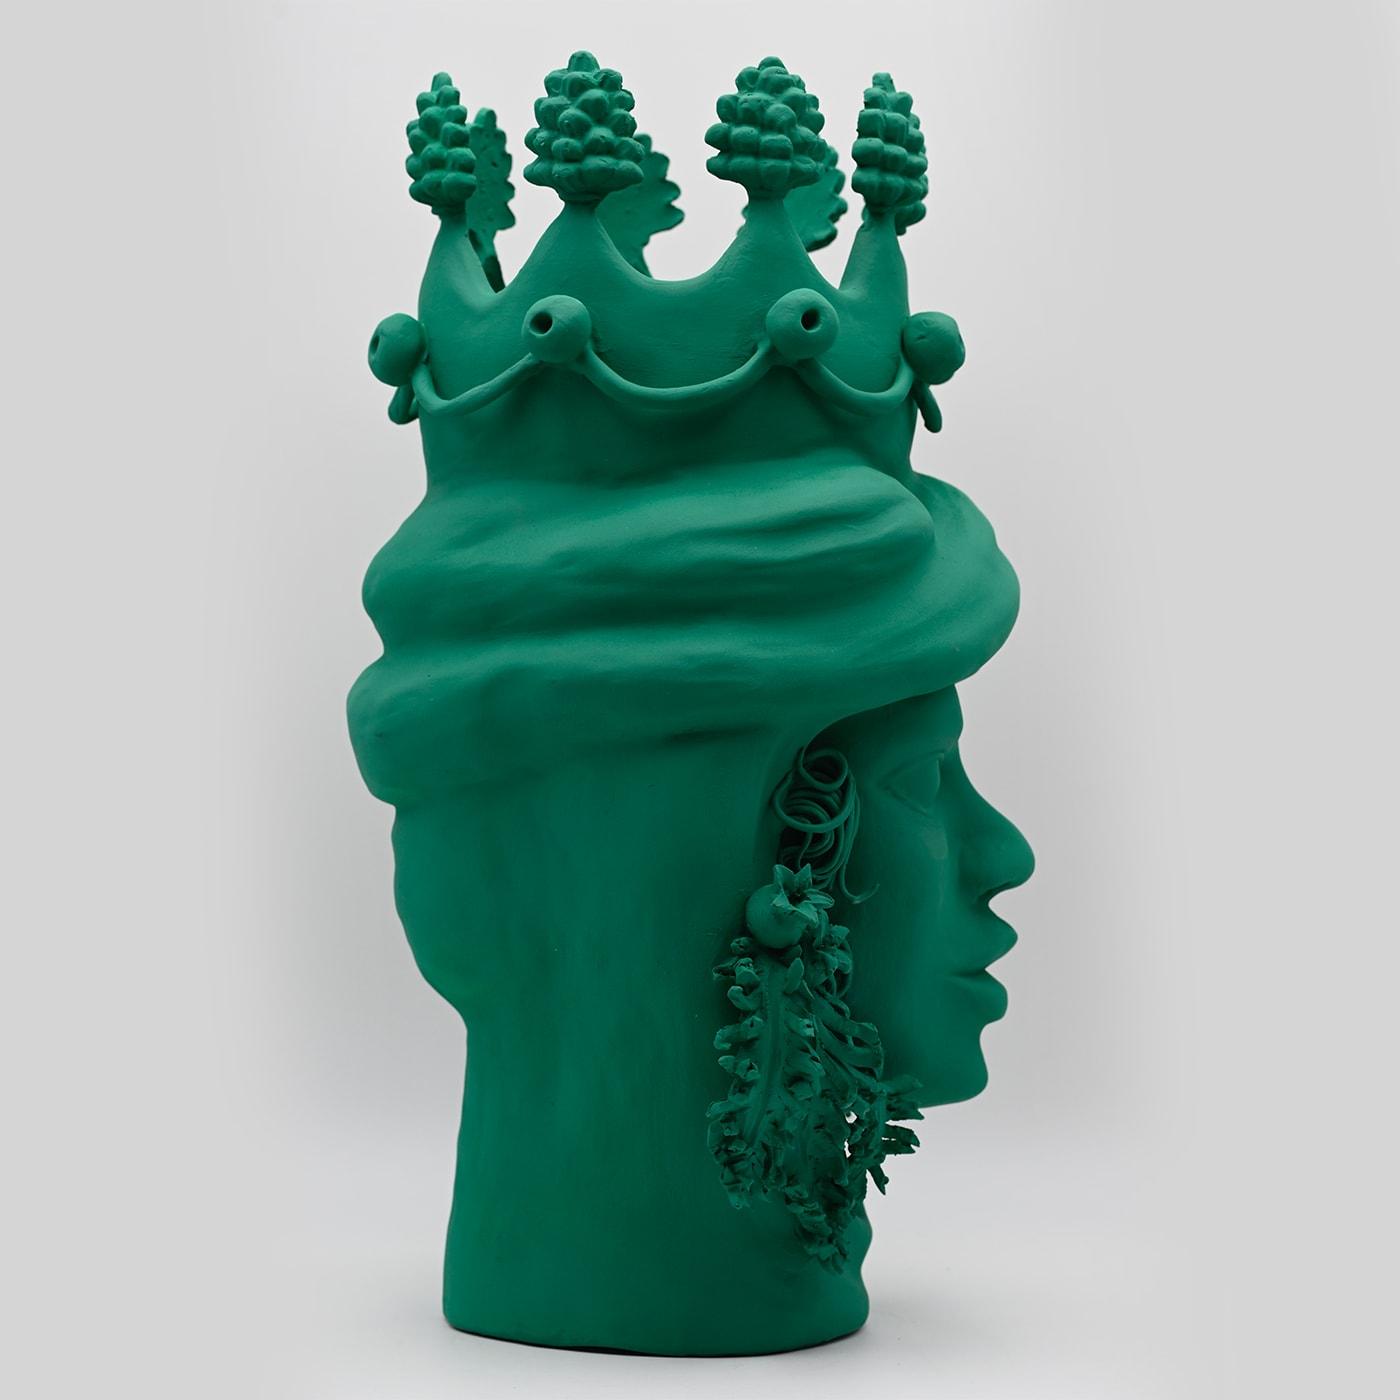 Traditional Green Moor's Head Sculpture